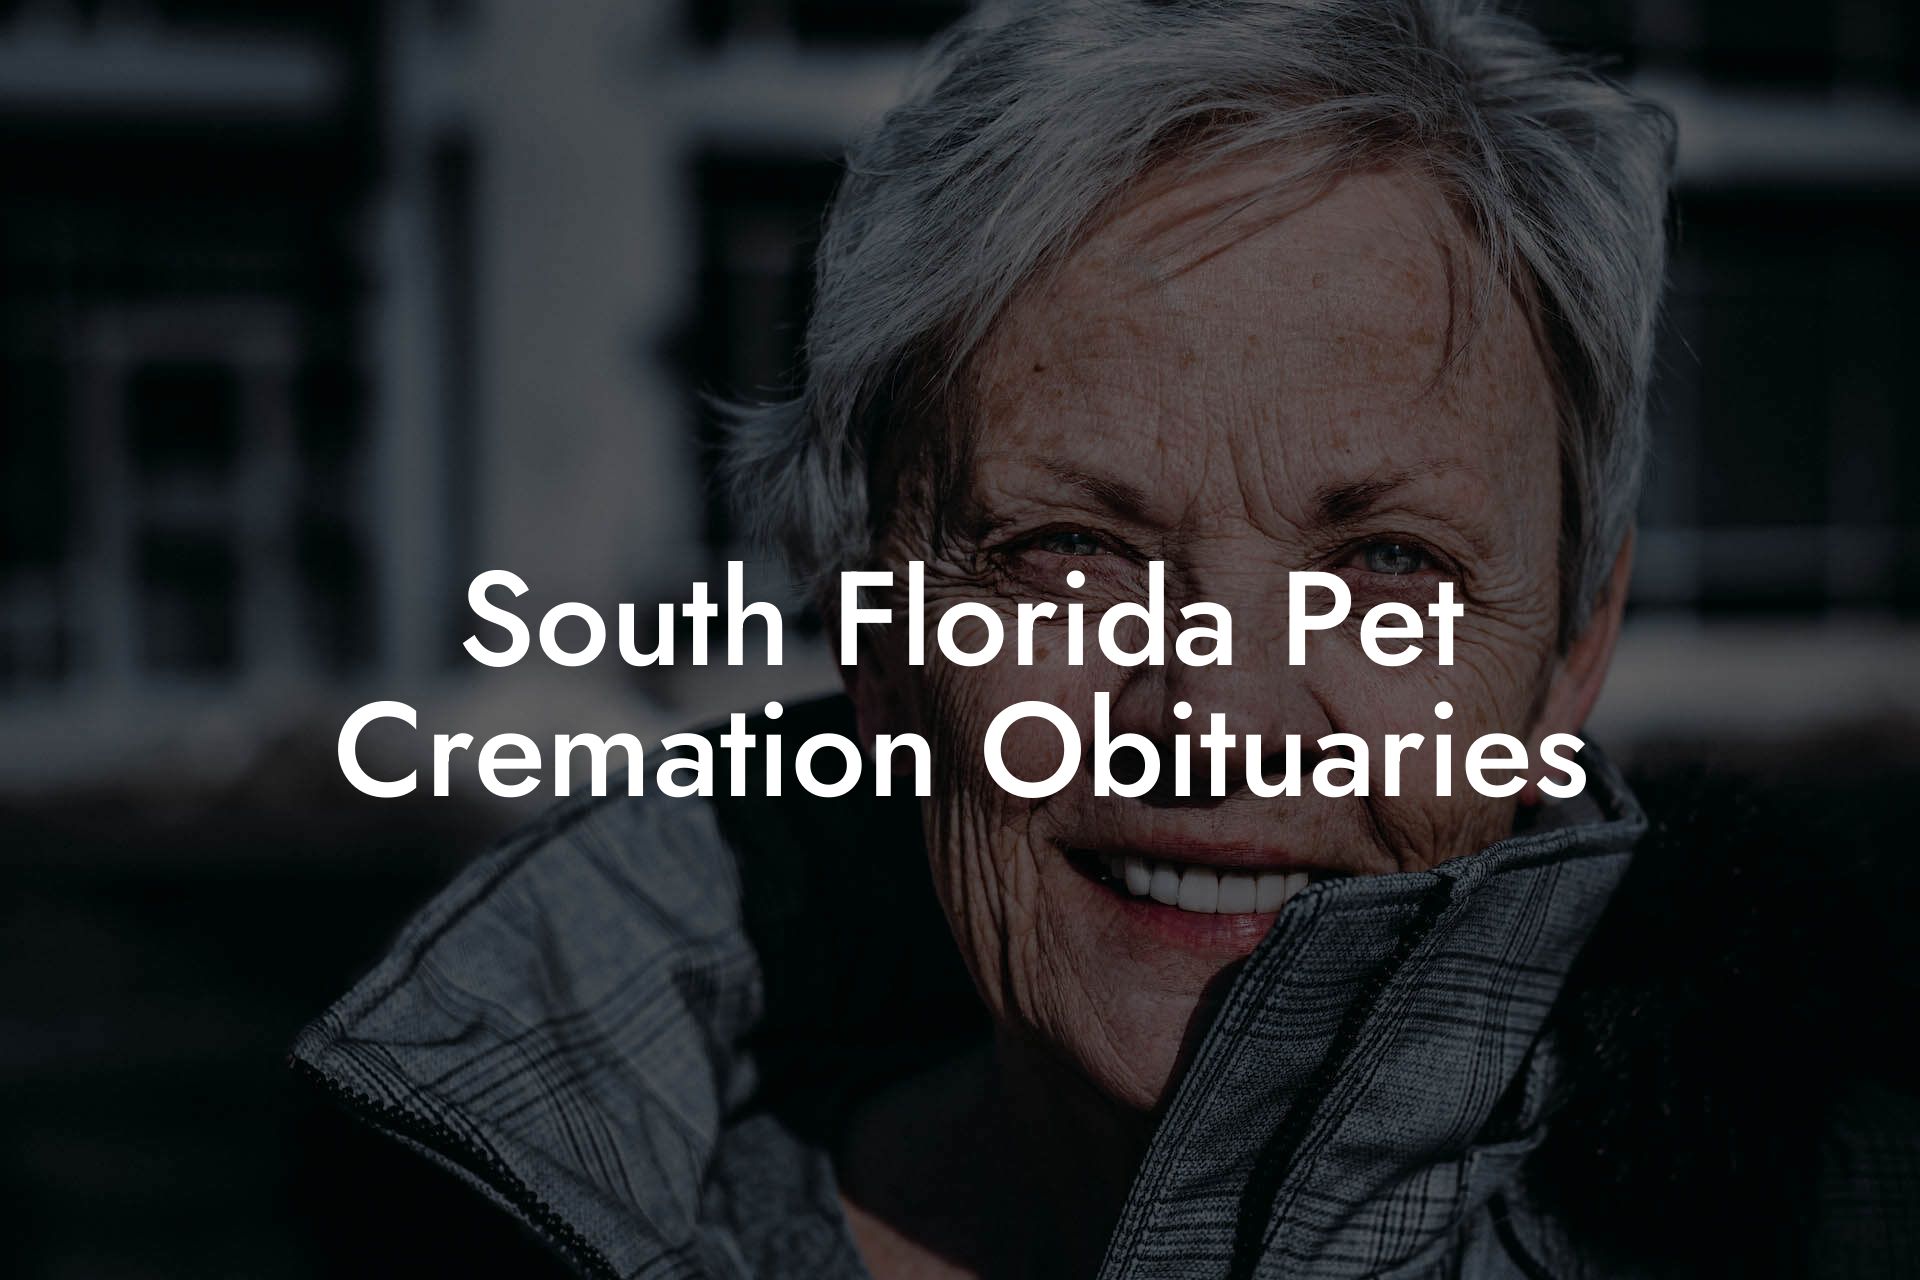 South Florida Pet Cremation Obituaries